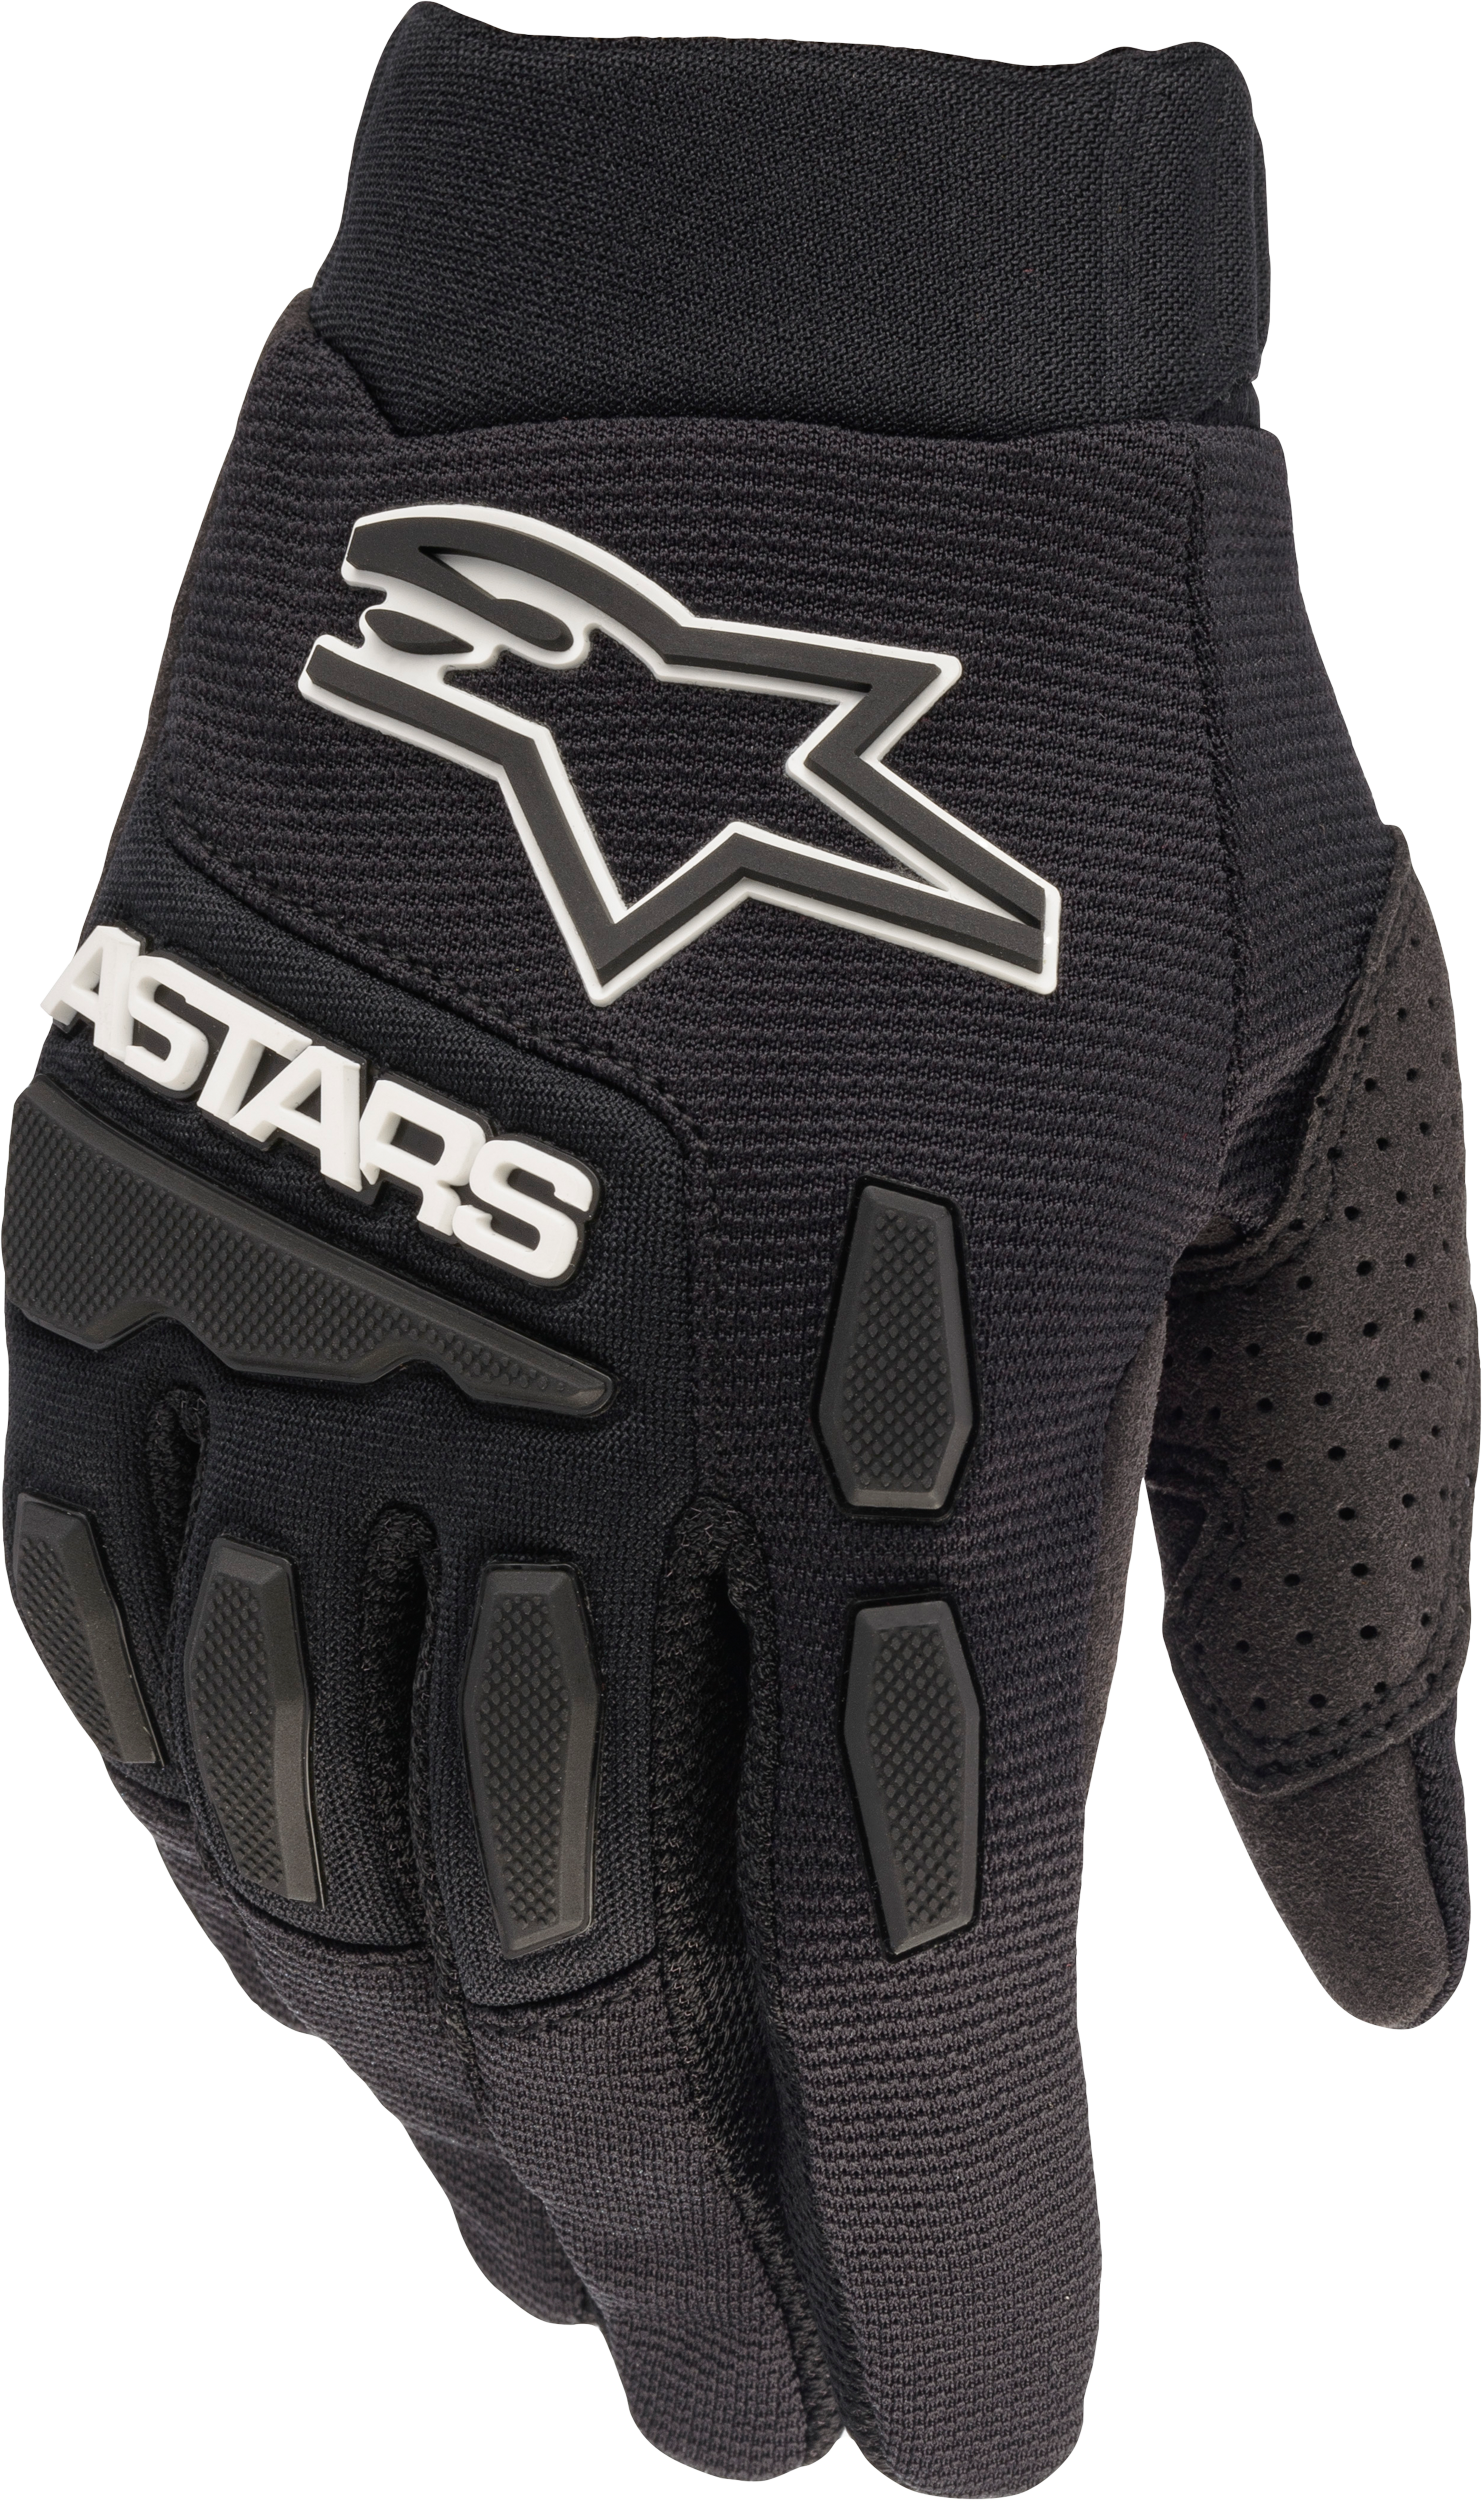 Alpinestars Stella Full Bore Gloves Black Medium 3583622-10-M